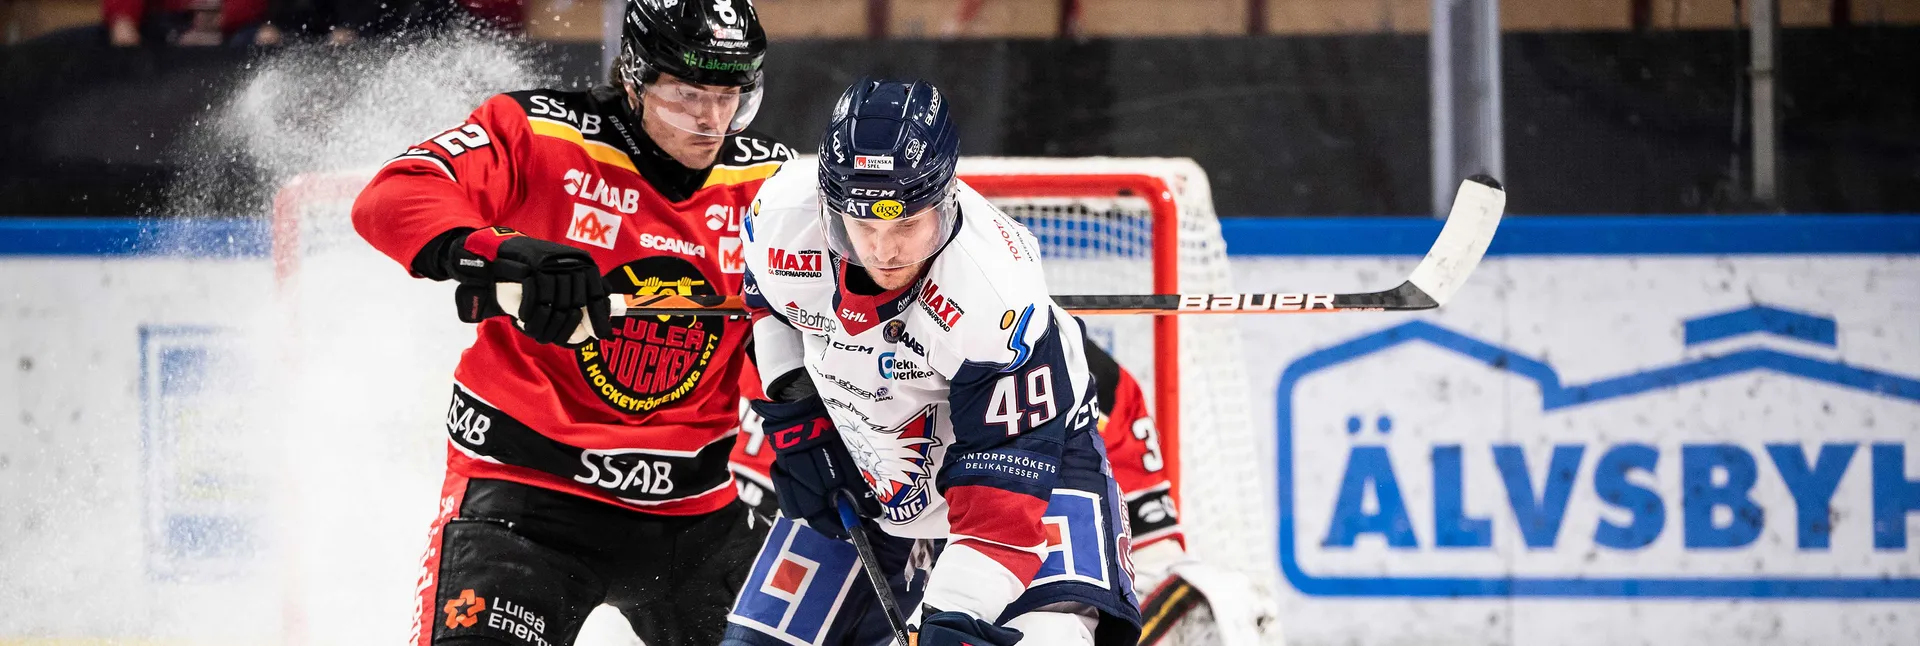 Ishockeymatch mellan Linköping och Luleå i SHL